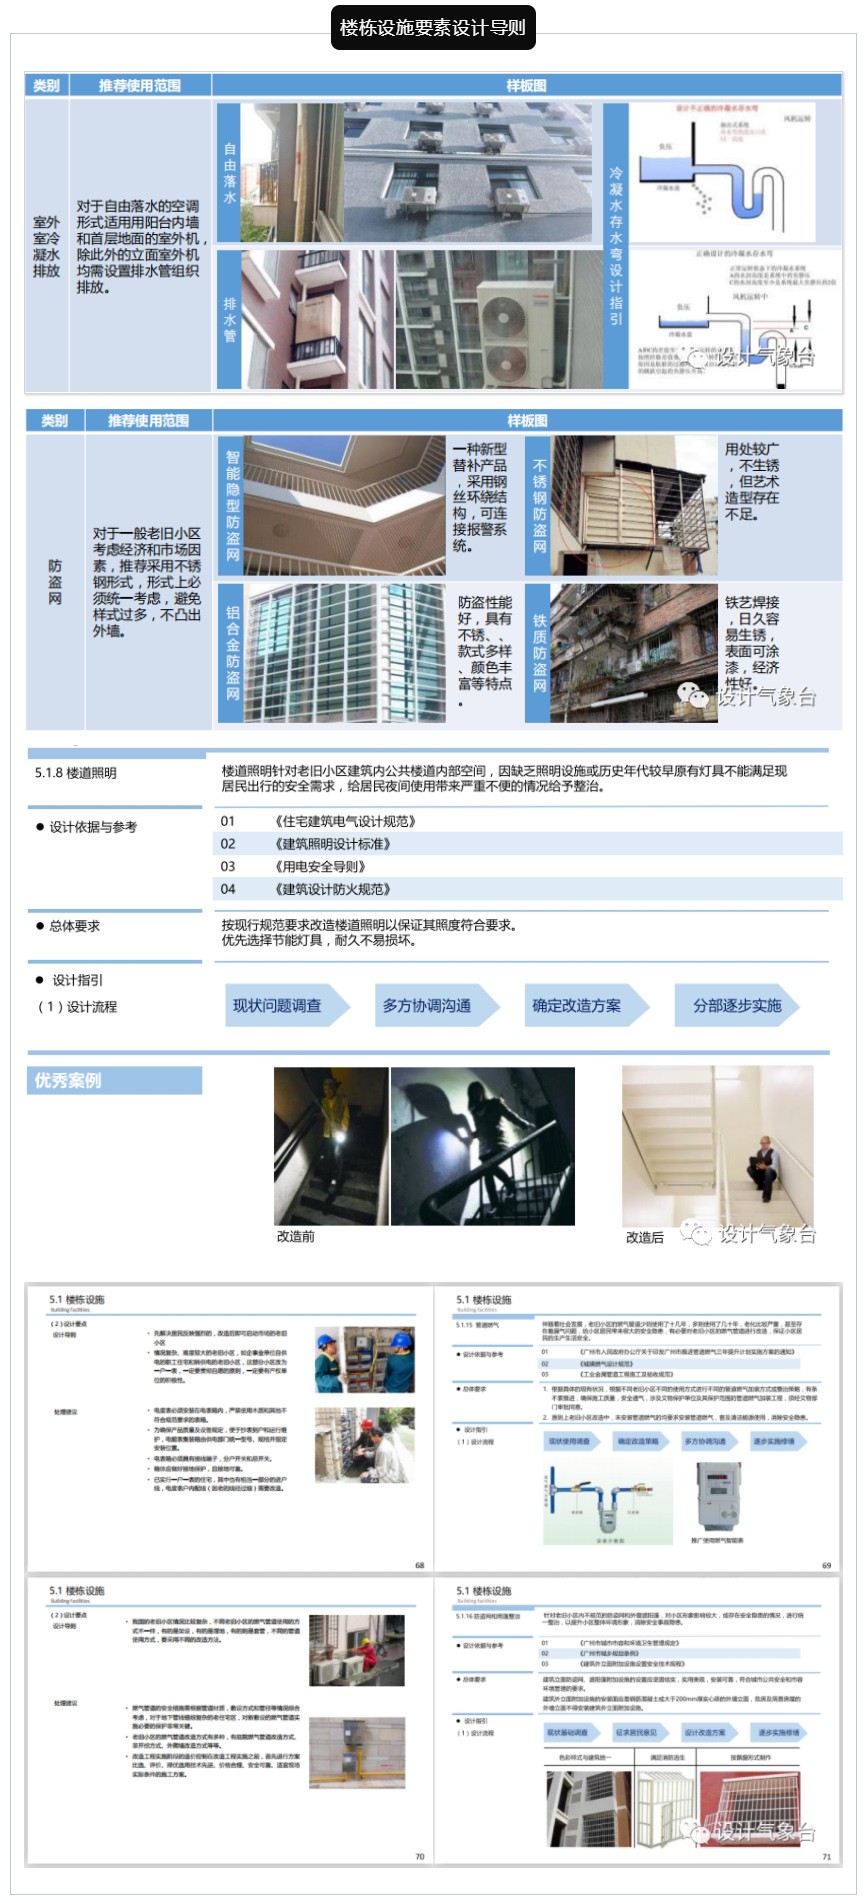 《广州老旧小区微改造设计导则》PDF_1586827546964695.jpg